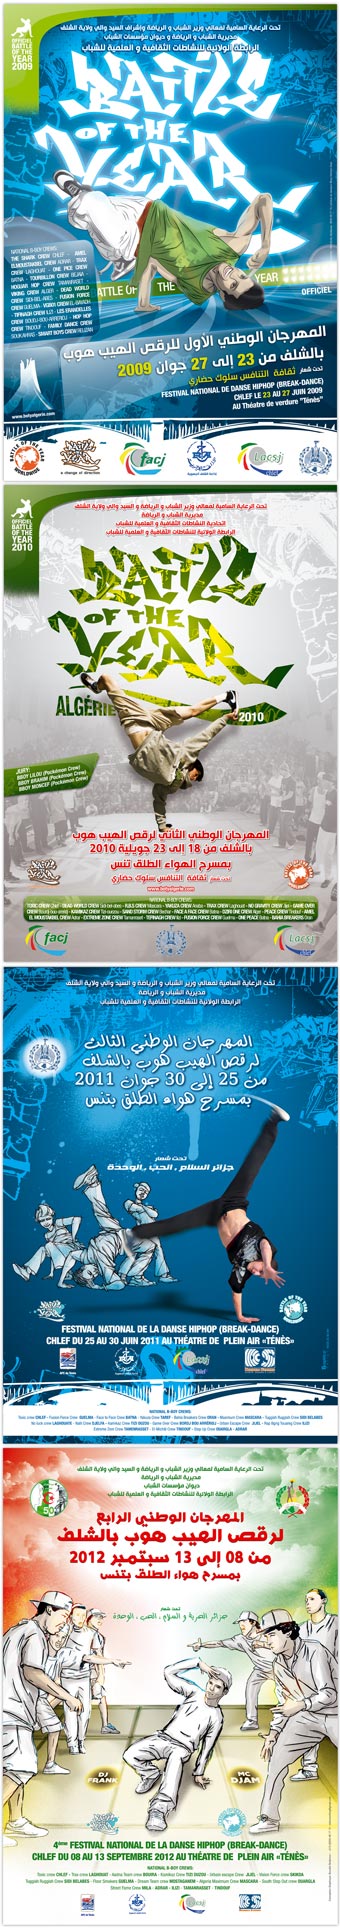 affichage pour le festival national de la danse HIP-HOP 'battle of the year' algérie